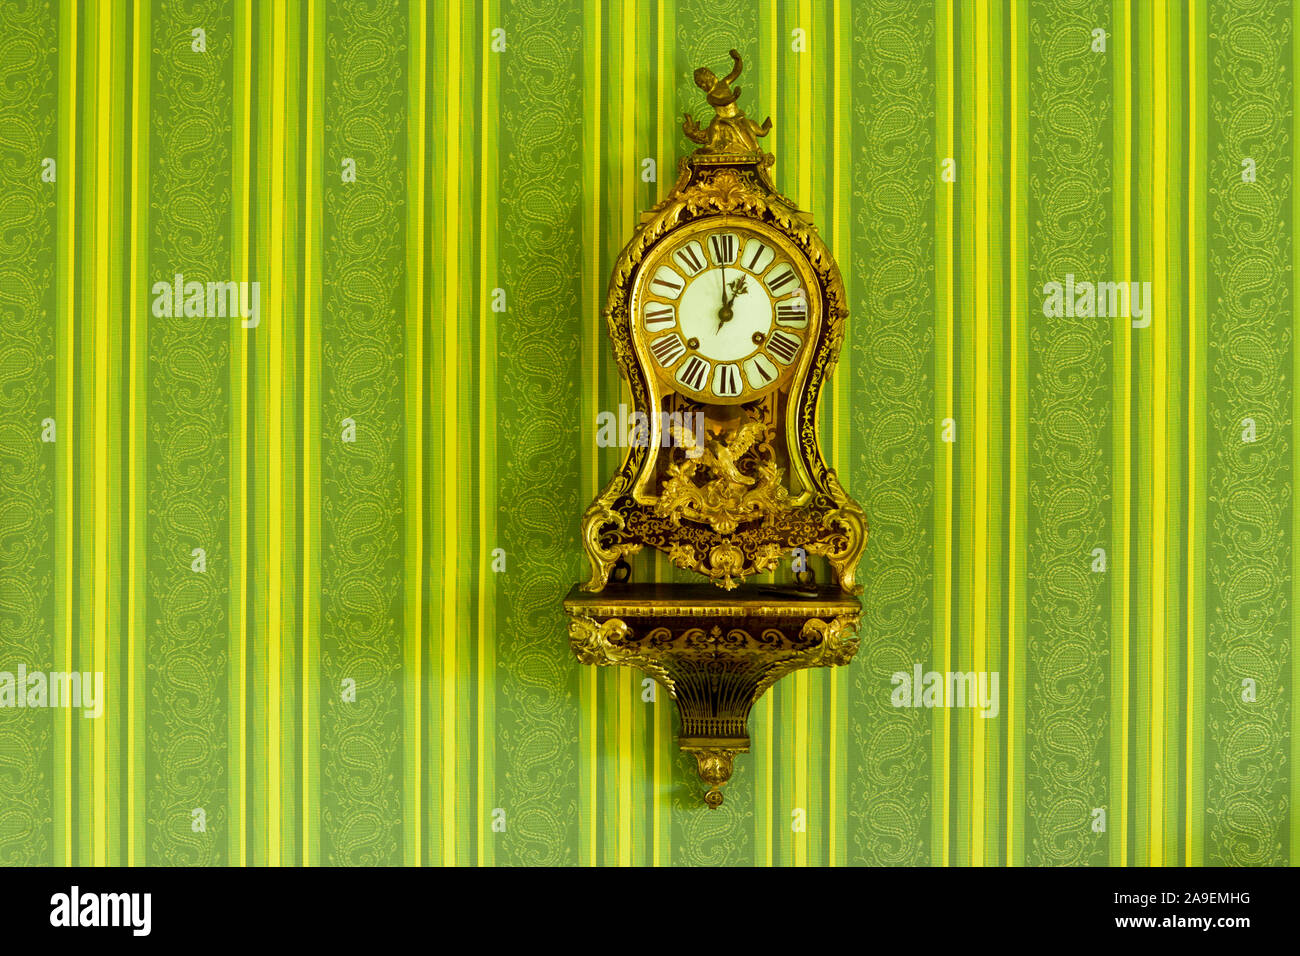 wall clock Stock Photo